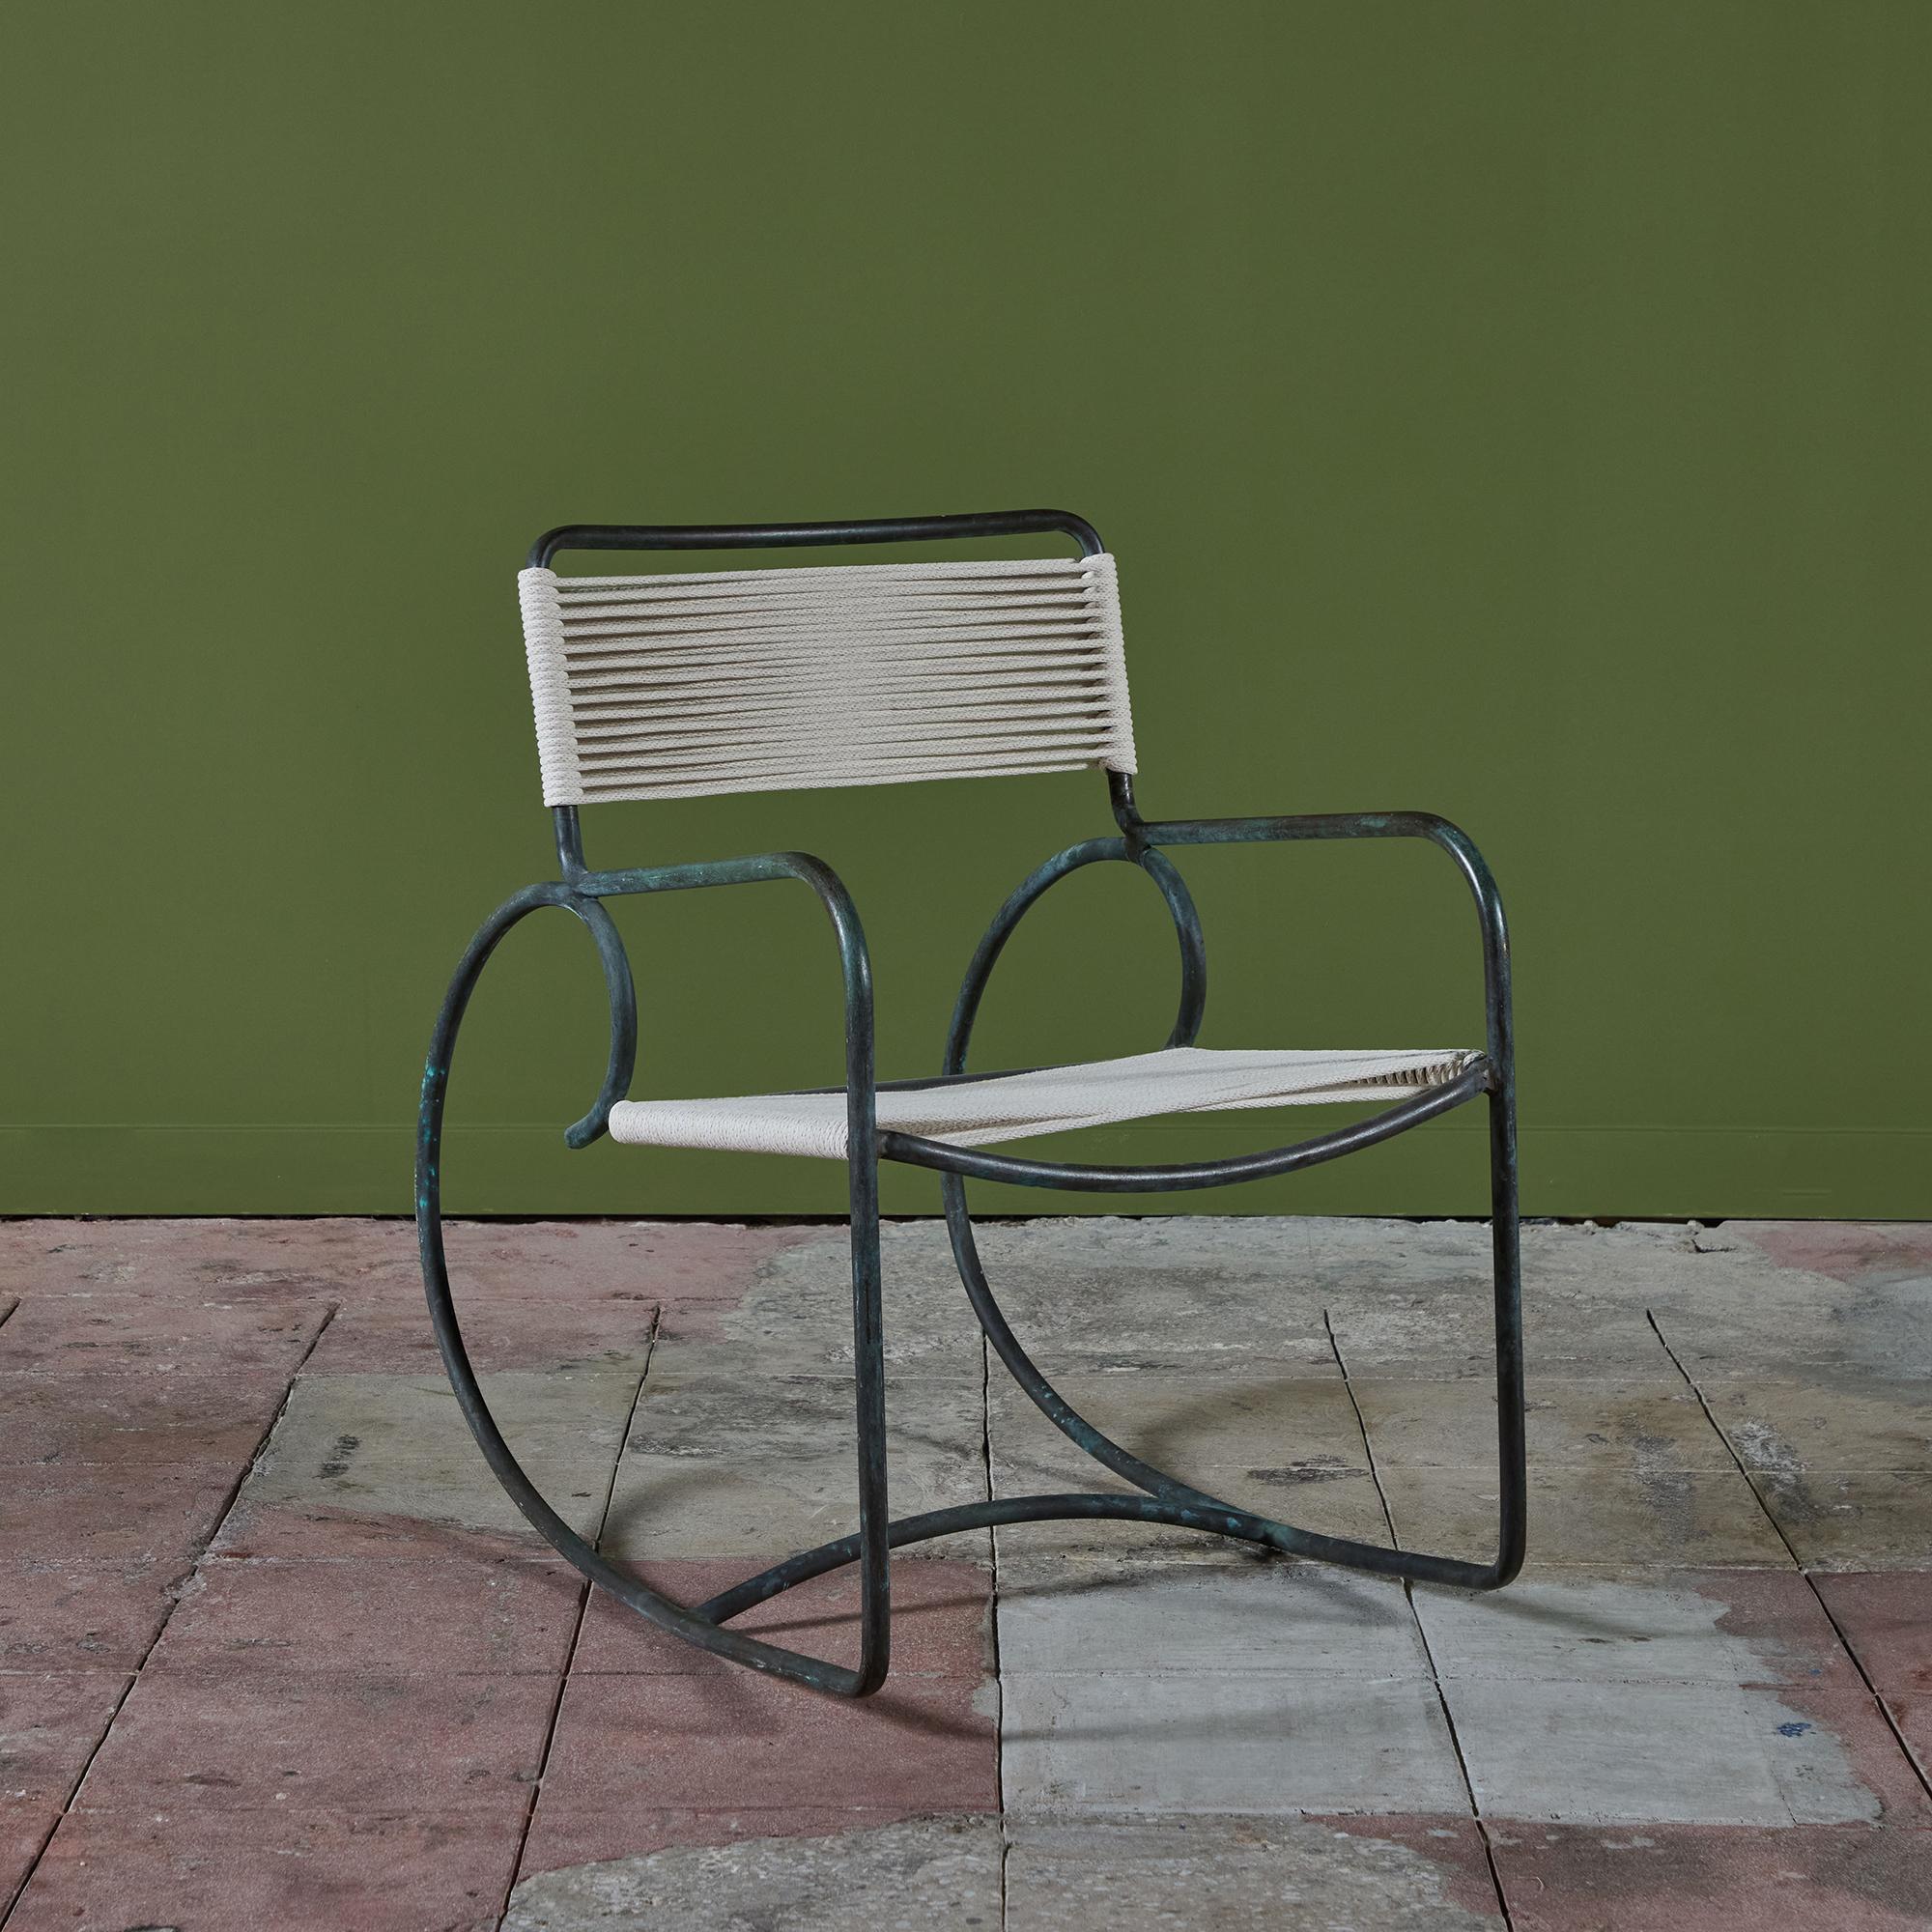 Ein Schaukelstuhl aus Bronze, entworfen von Walter Lamb und hergestellt von Brown Jordan. Der Stuhl hat eine skulpturale Form, mit einer einzigen Formation aus Bronzerohr, die die Rückenlehne, die Armlehnen und die übertrieben runden Kufen bildet,